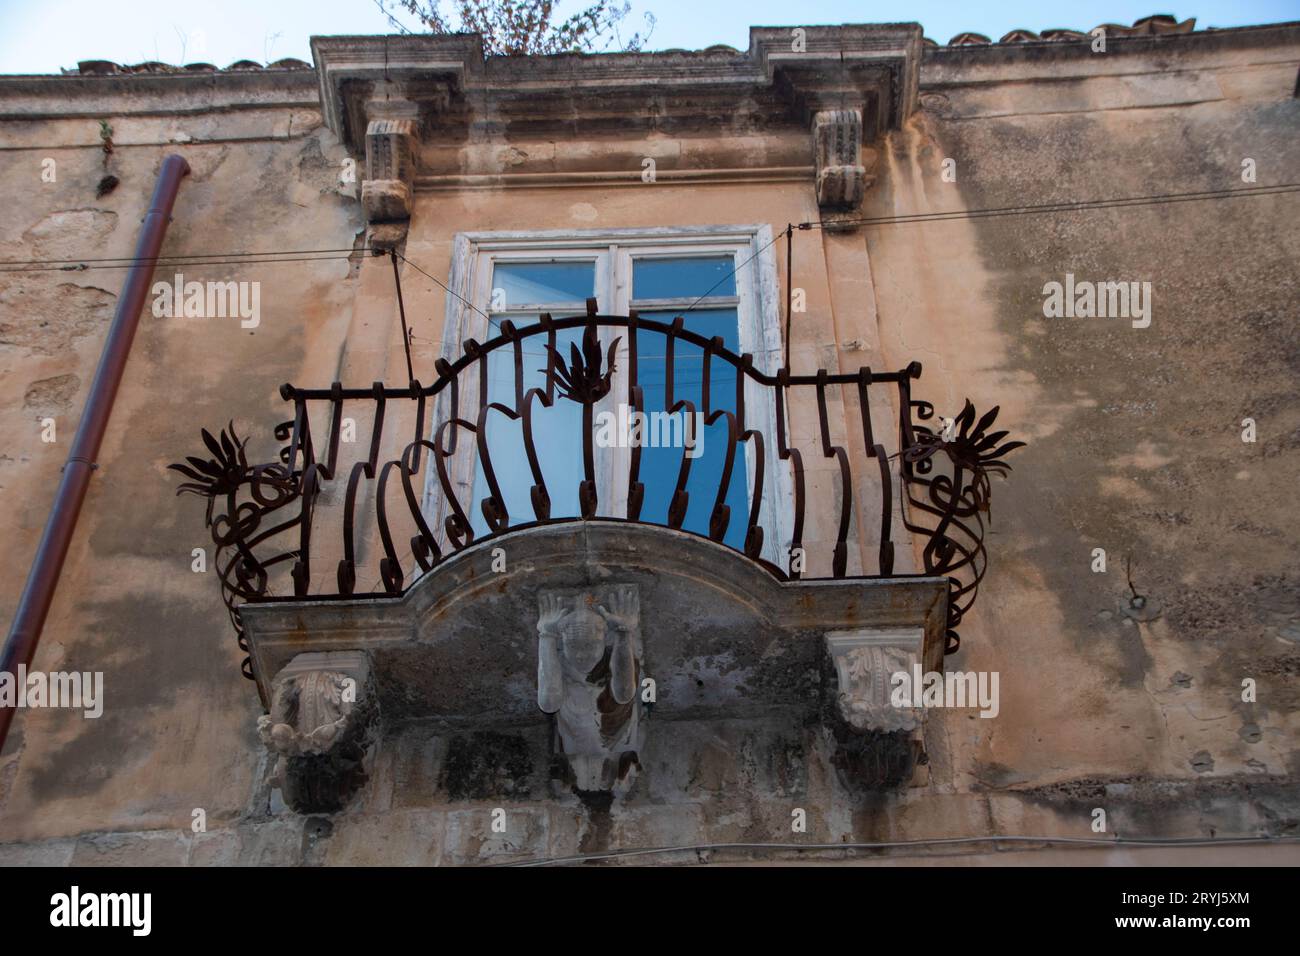 Centro storico di Ragusa Ibla in Sicilia Foto Stock